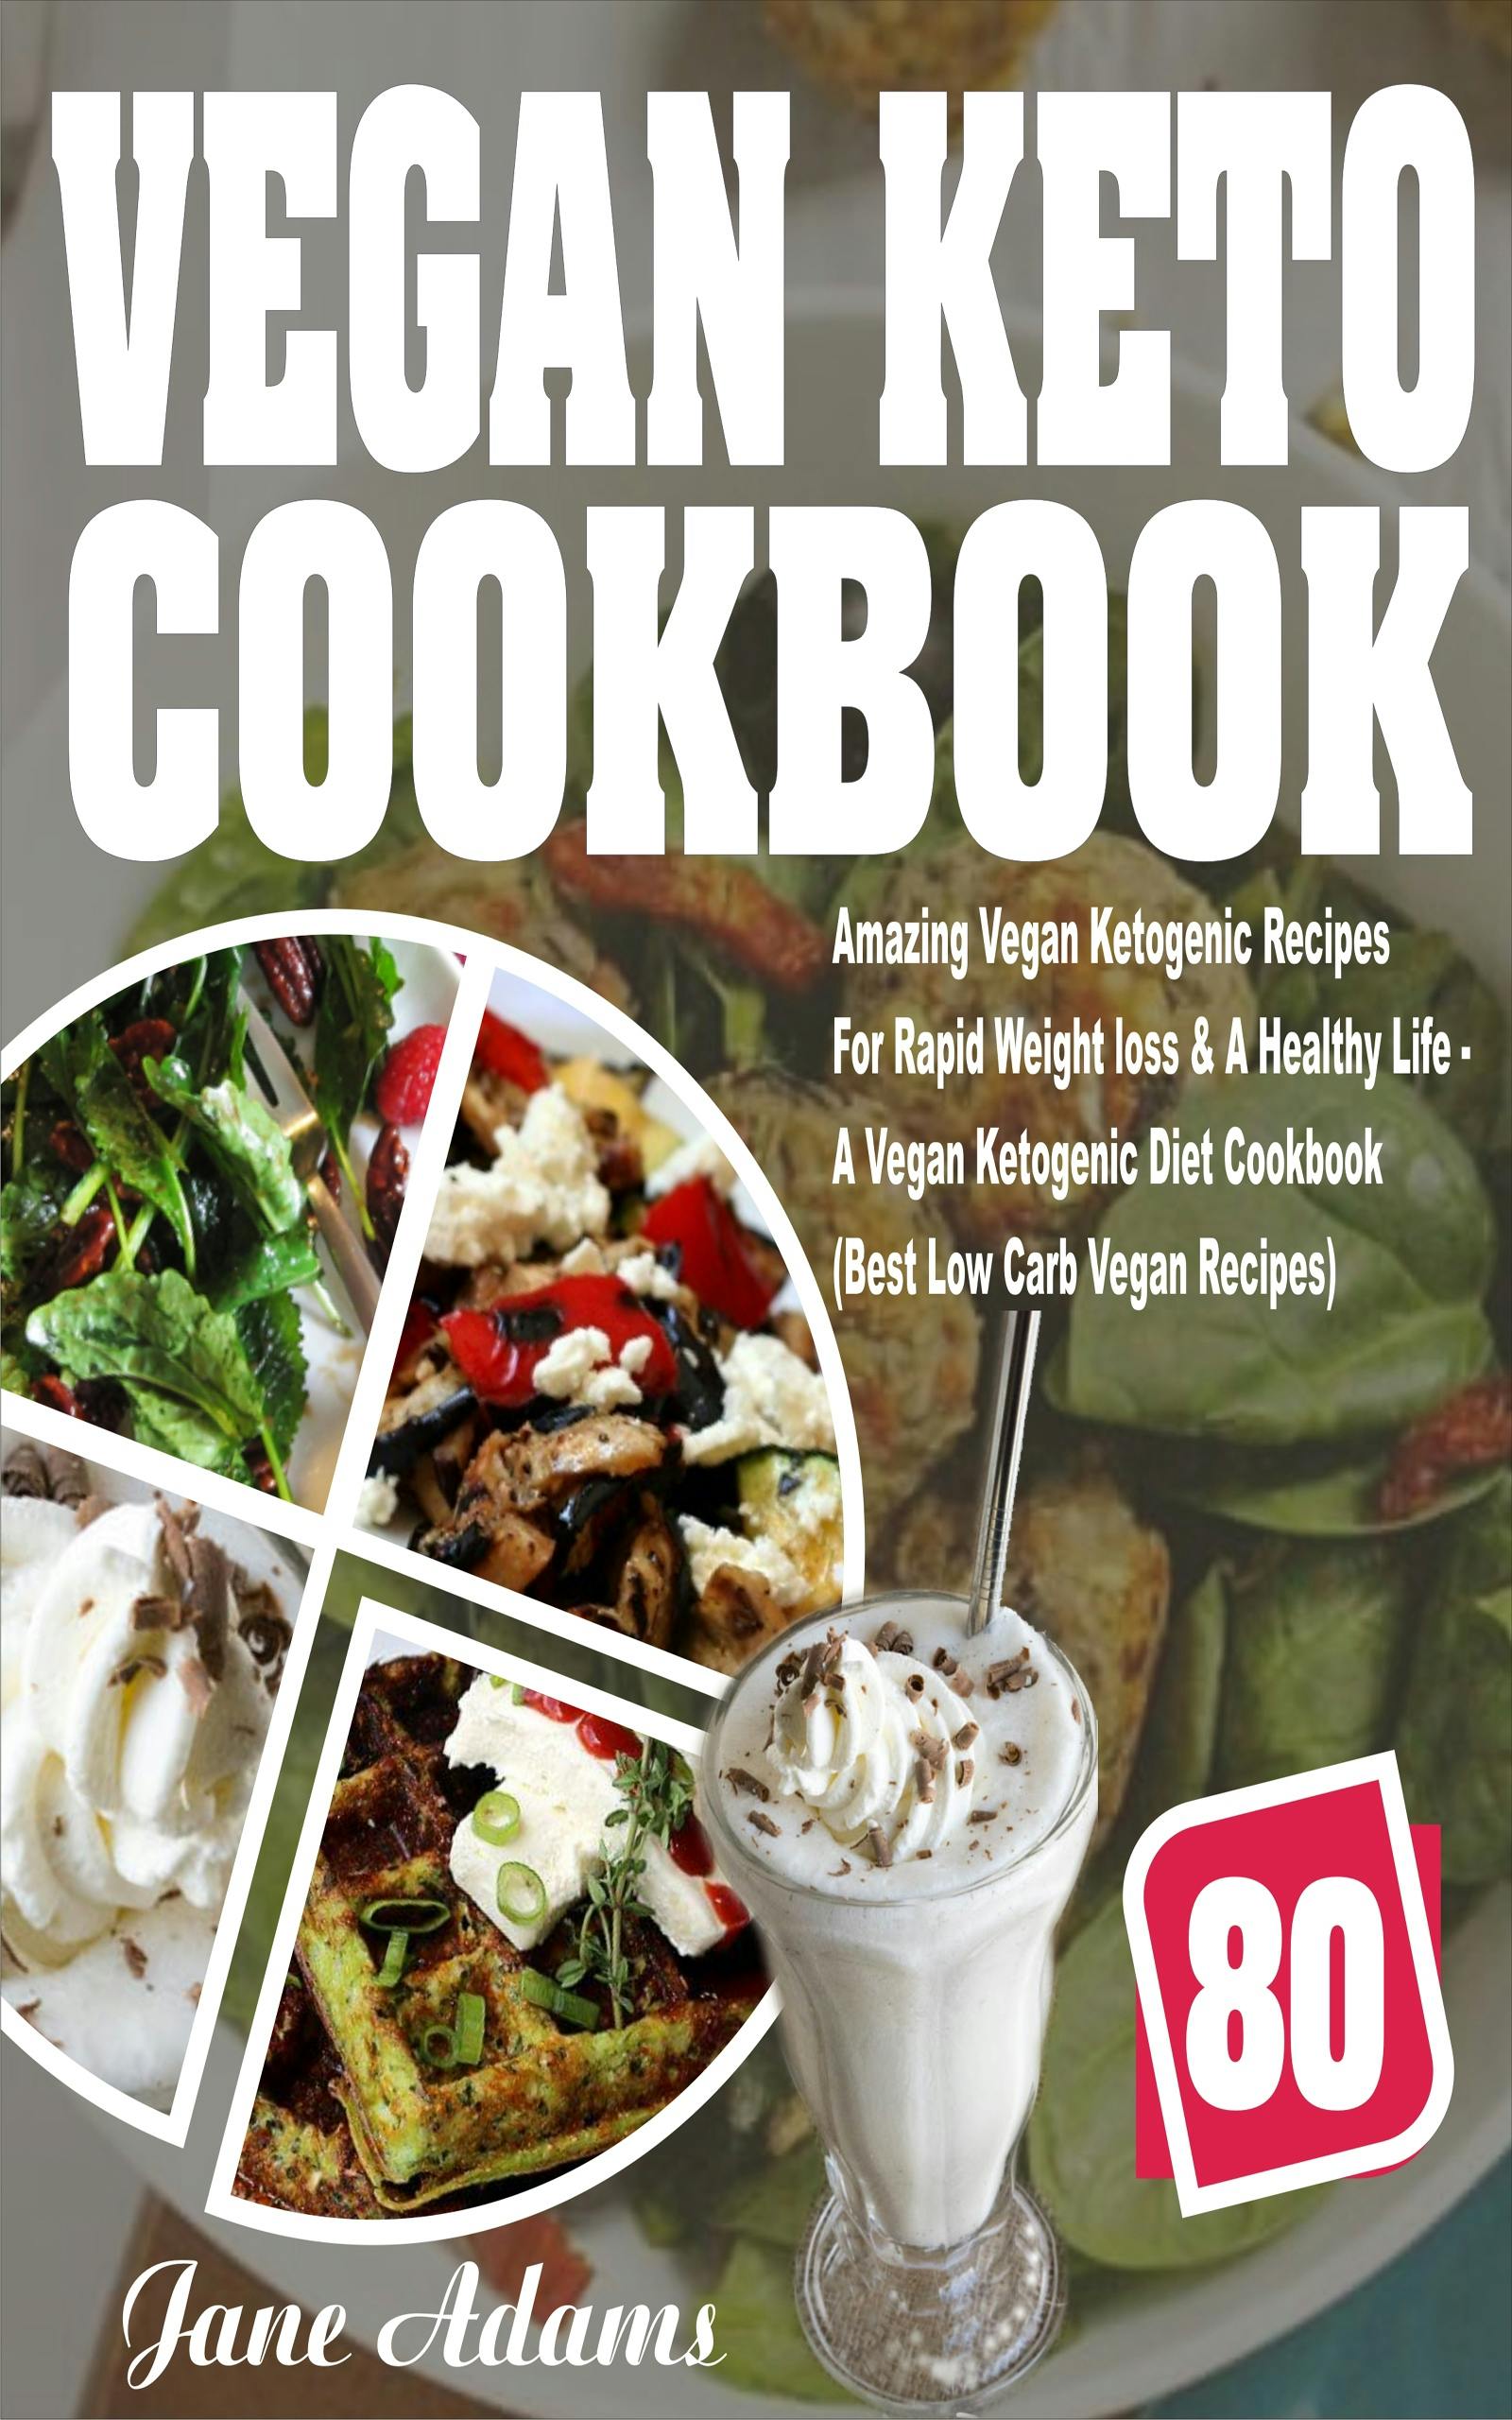 Vegan Keto Cookbook - Jane Adams